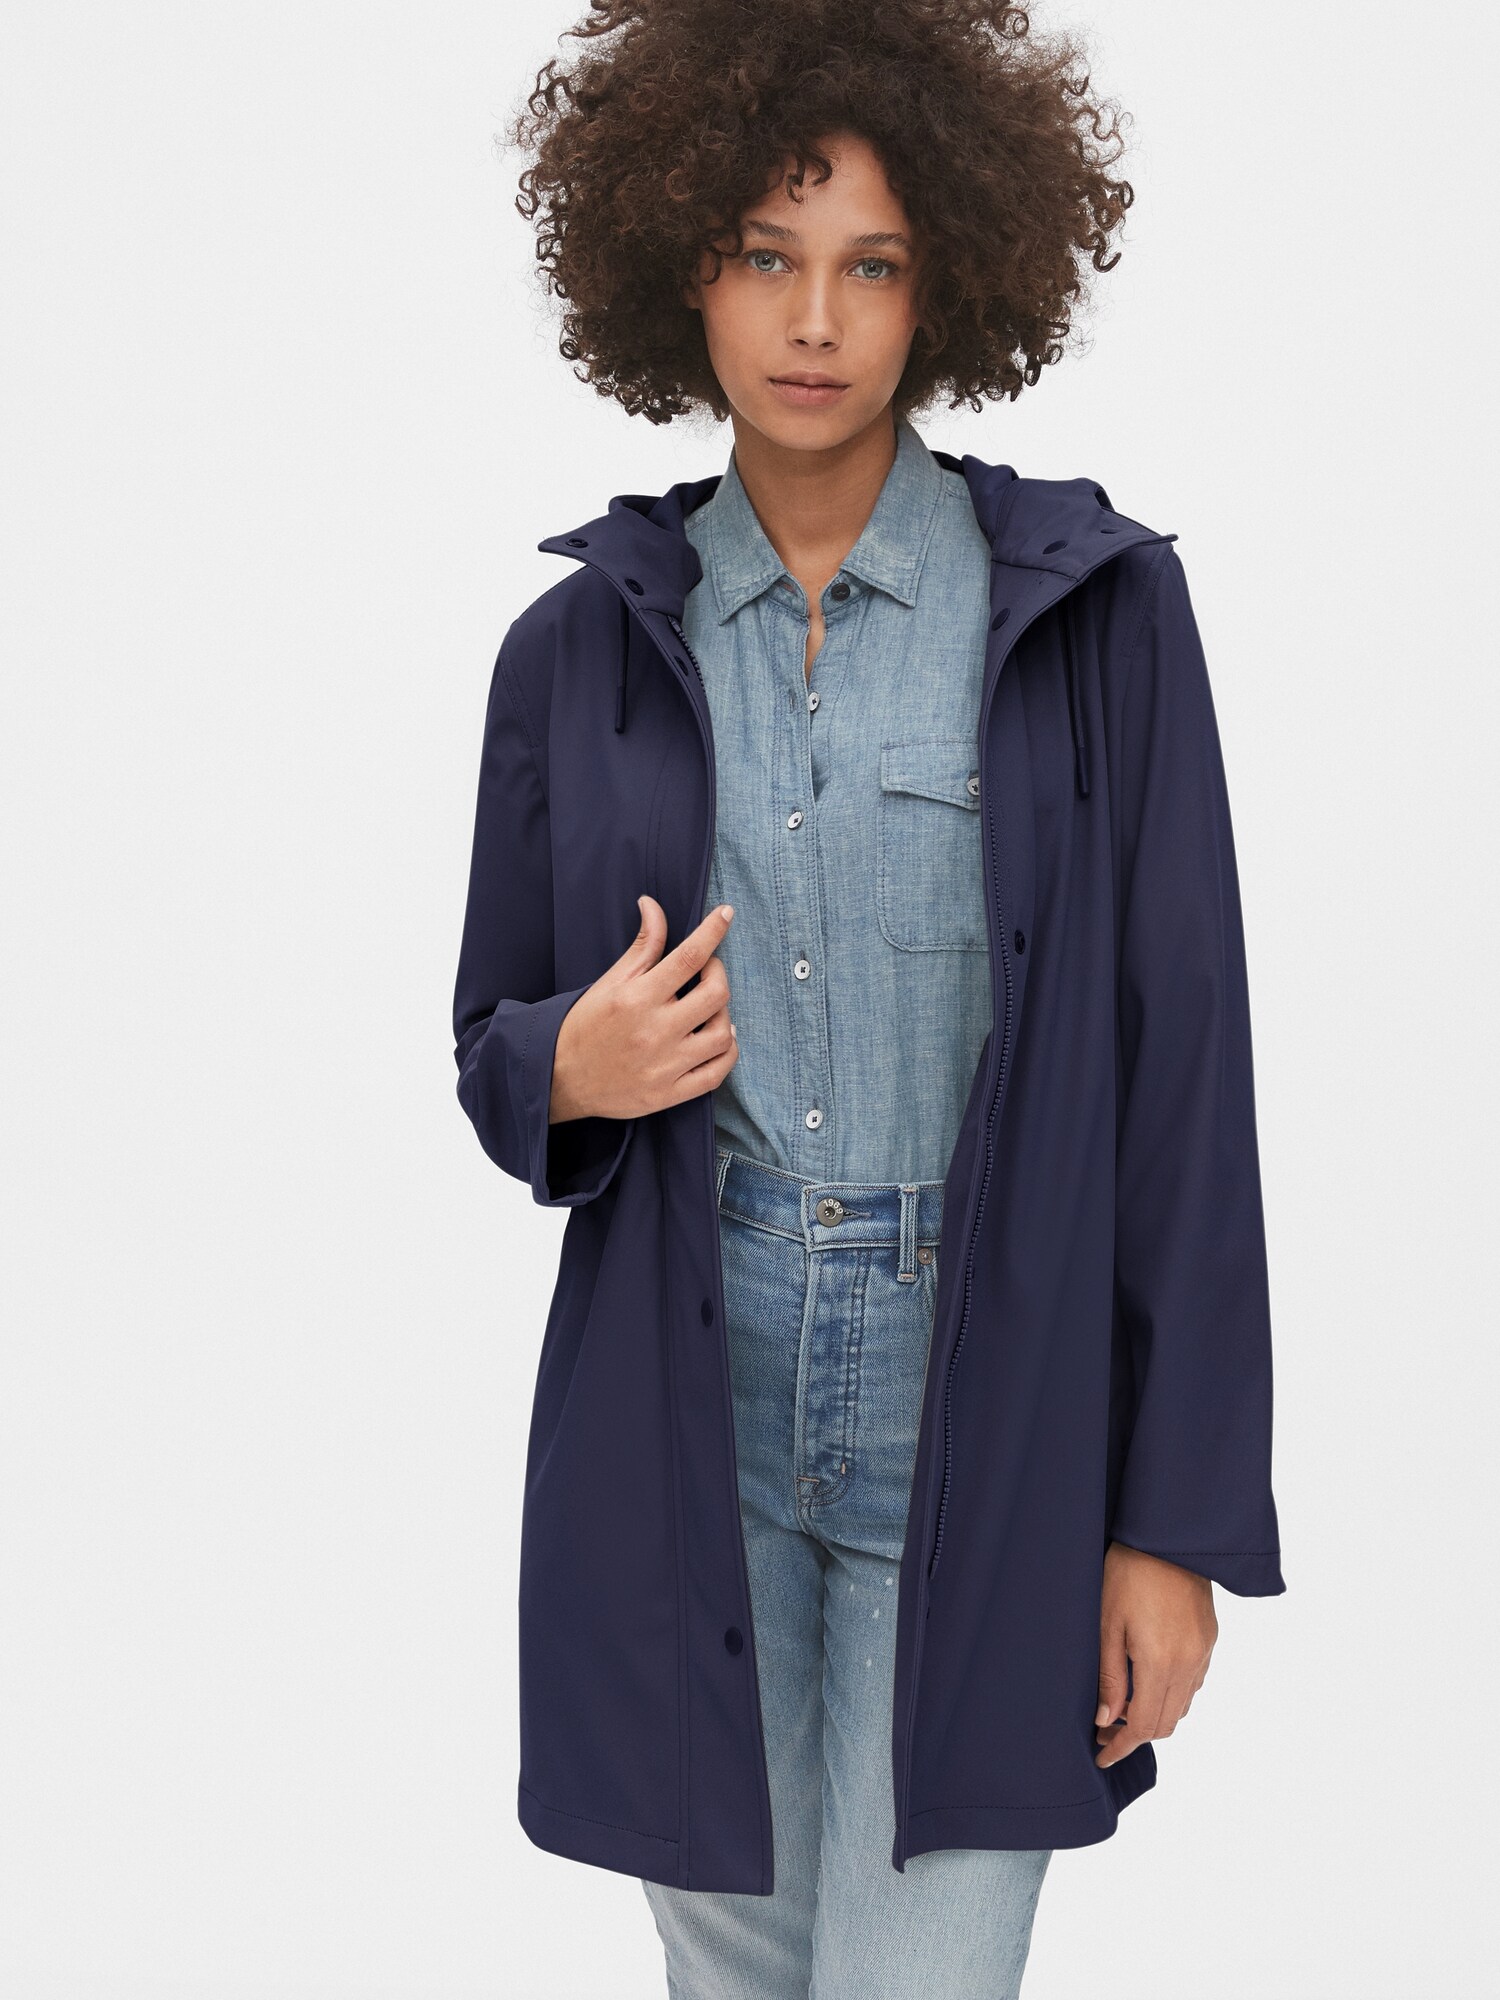 gap womens raincoat